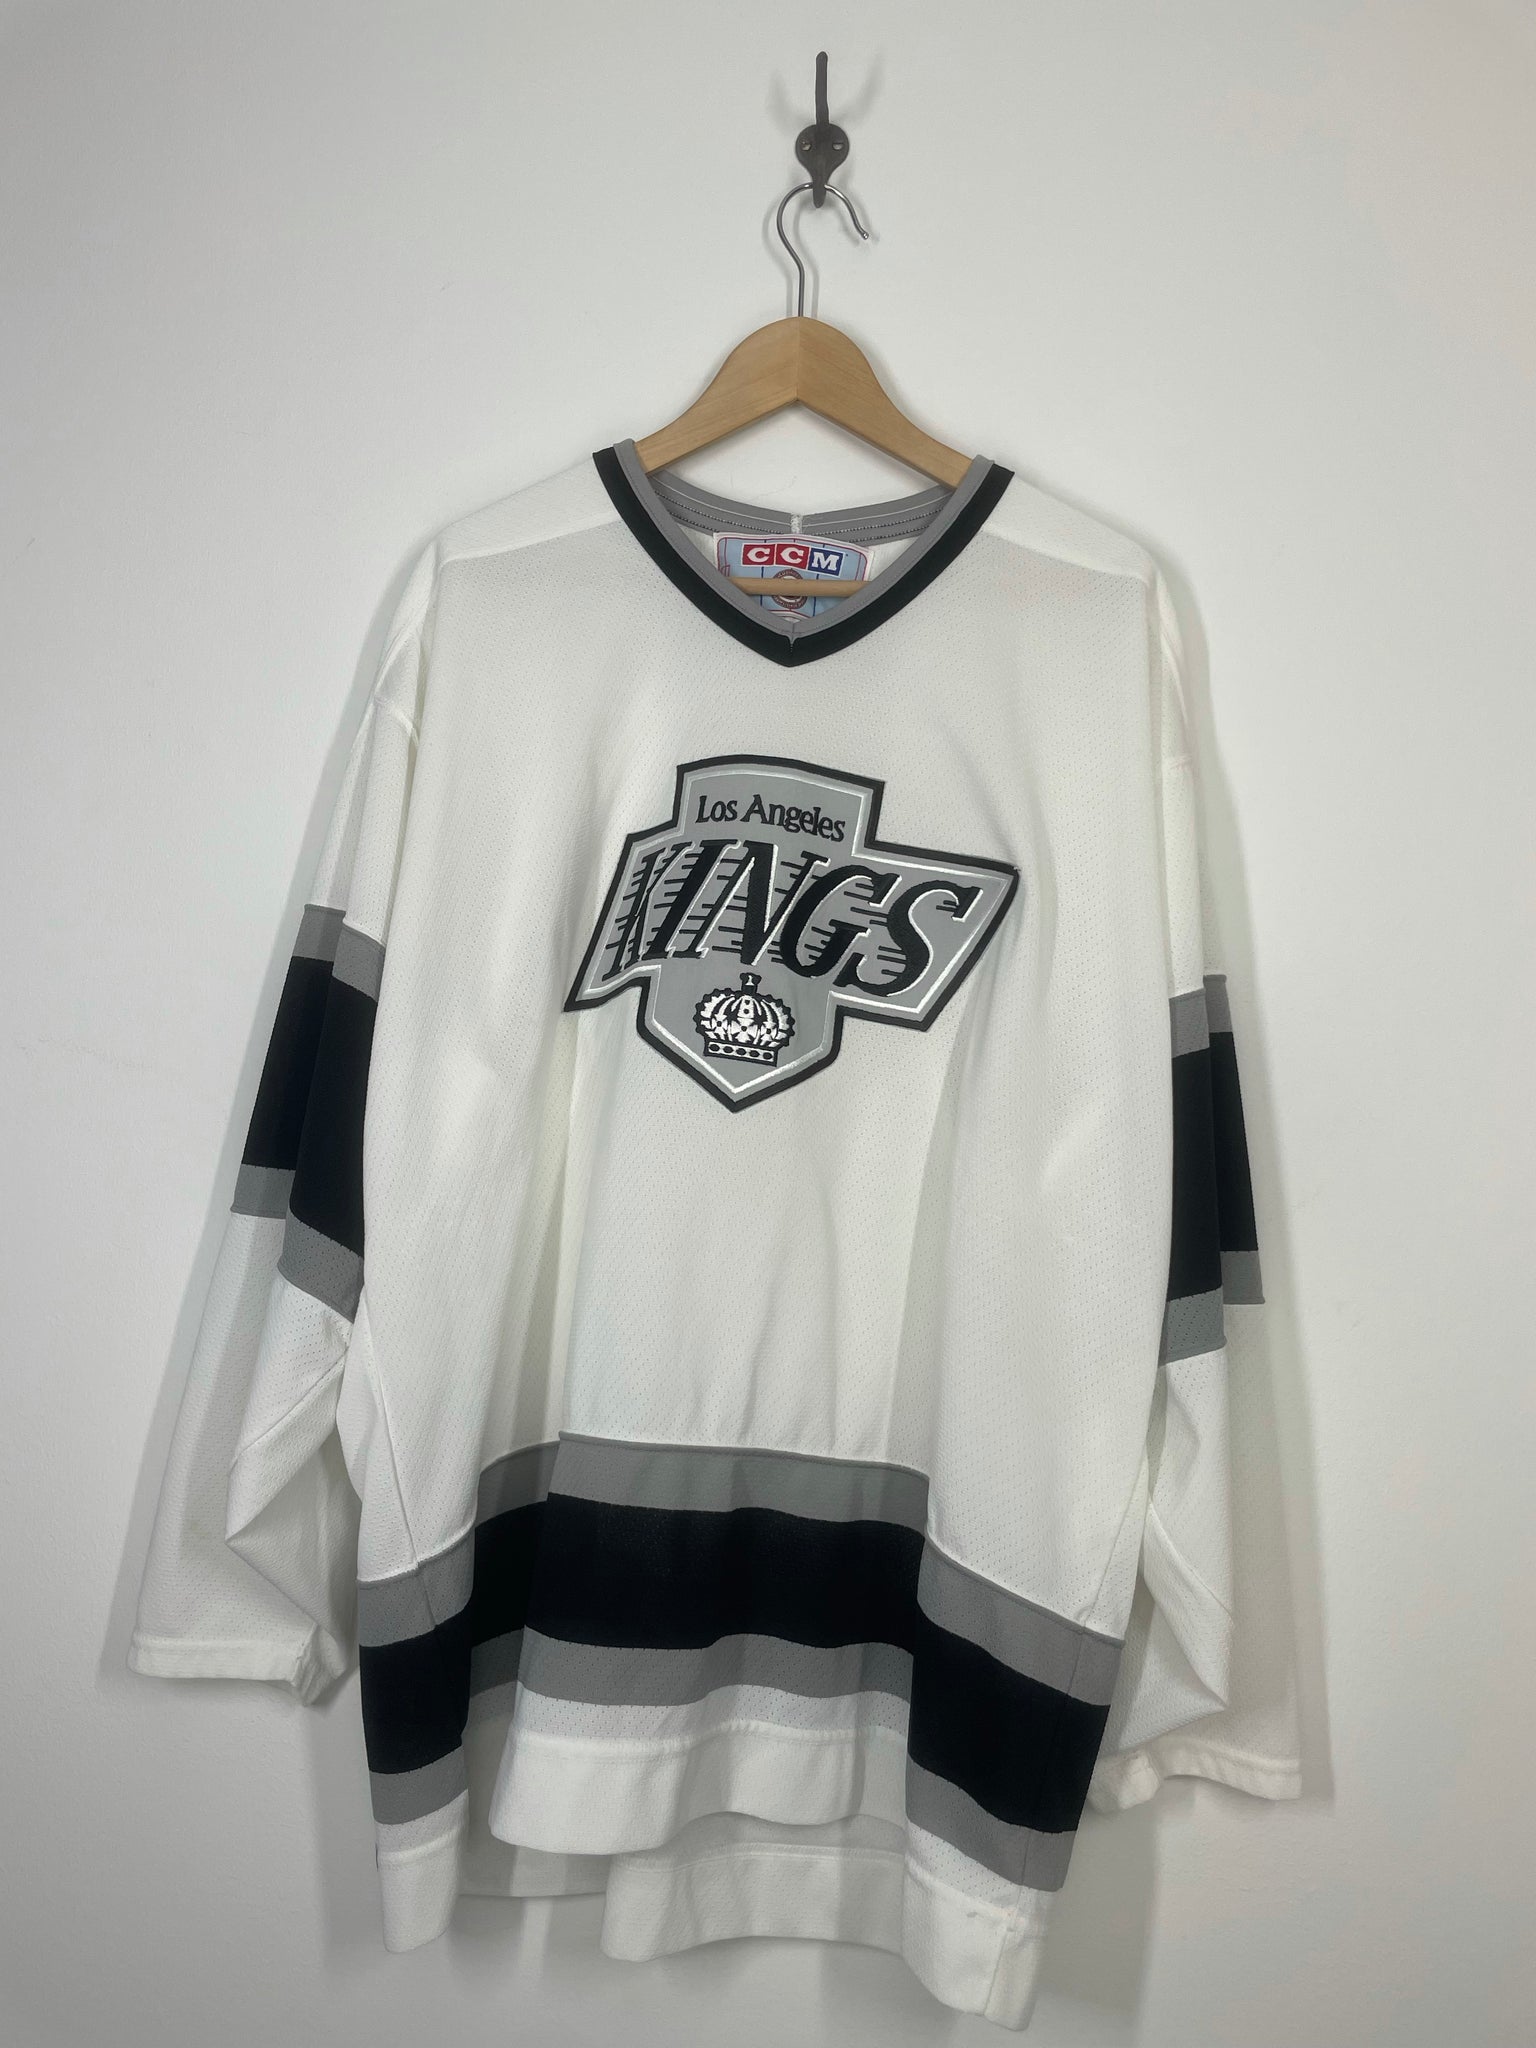 Lakings Shirt Kings Tee Hockey Sweatshirt Vintage Sweatshirt